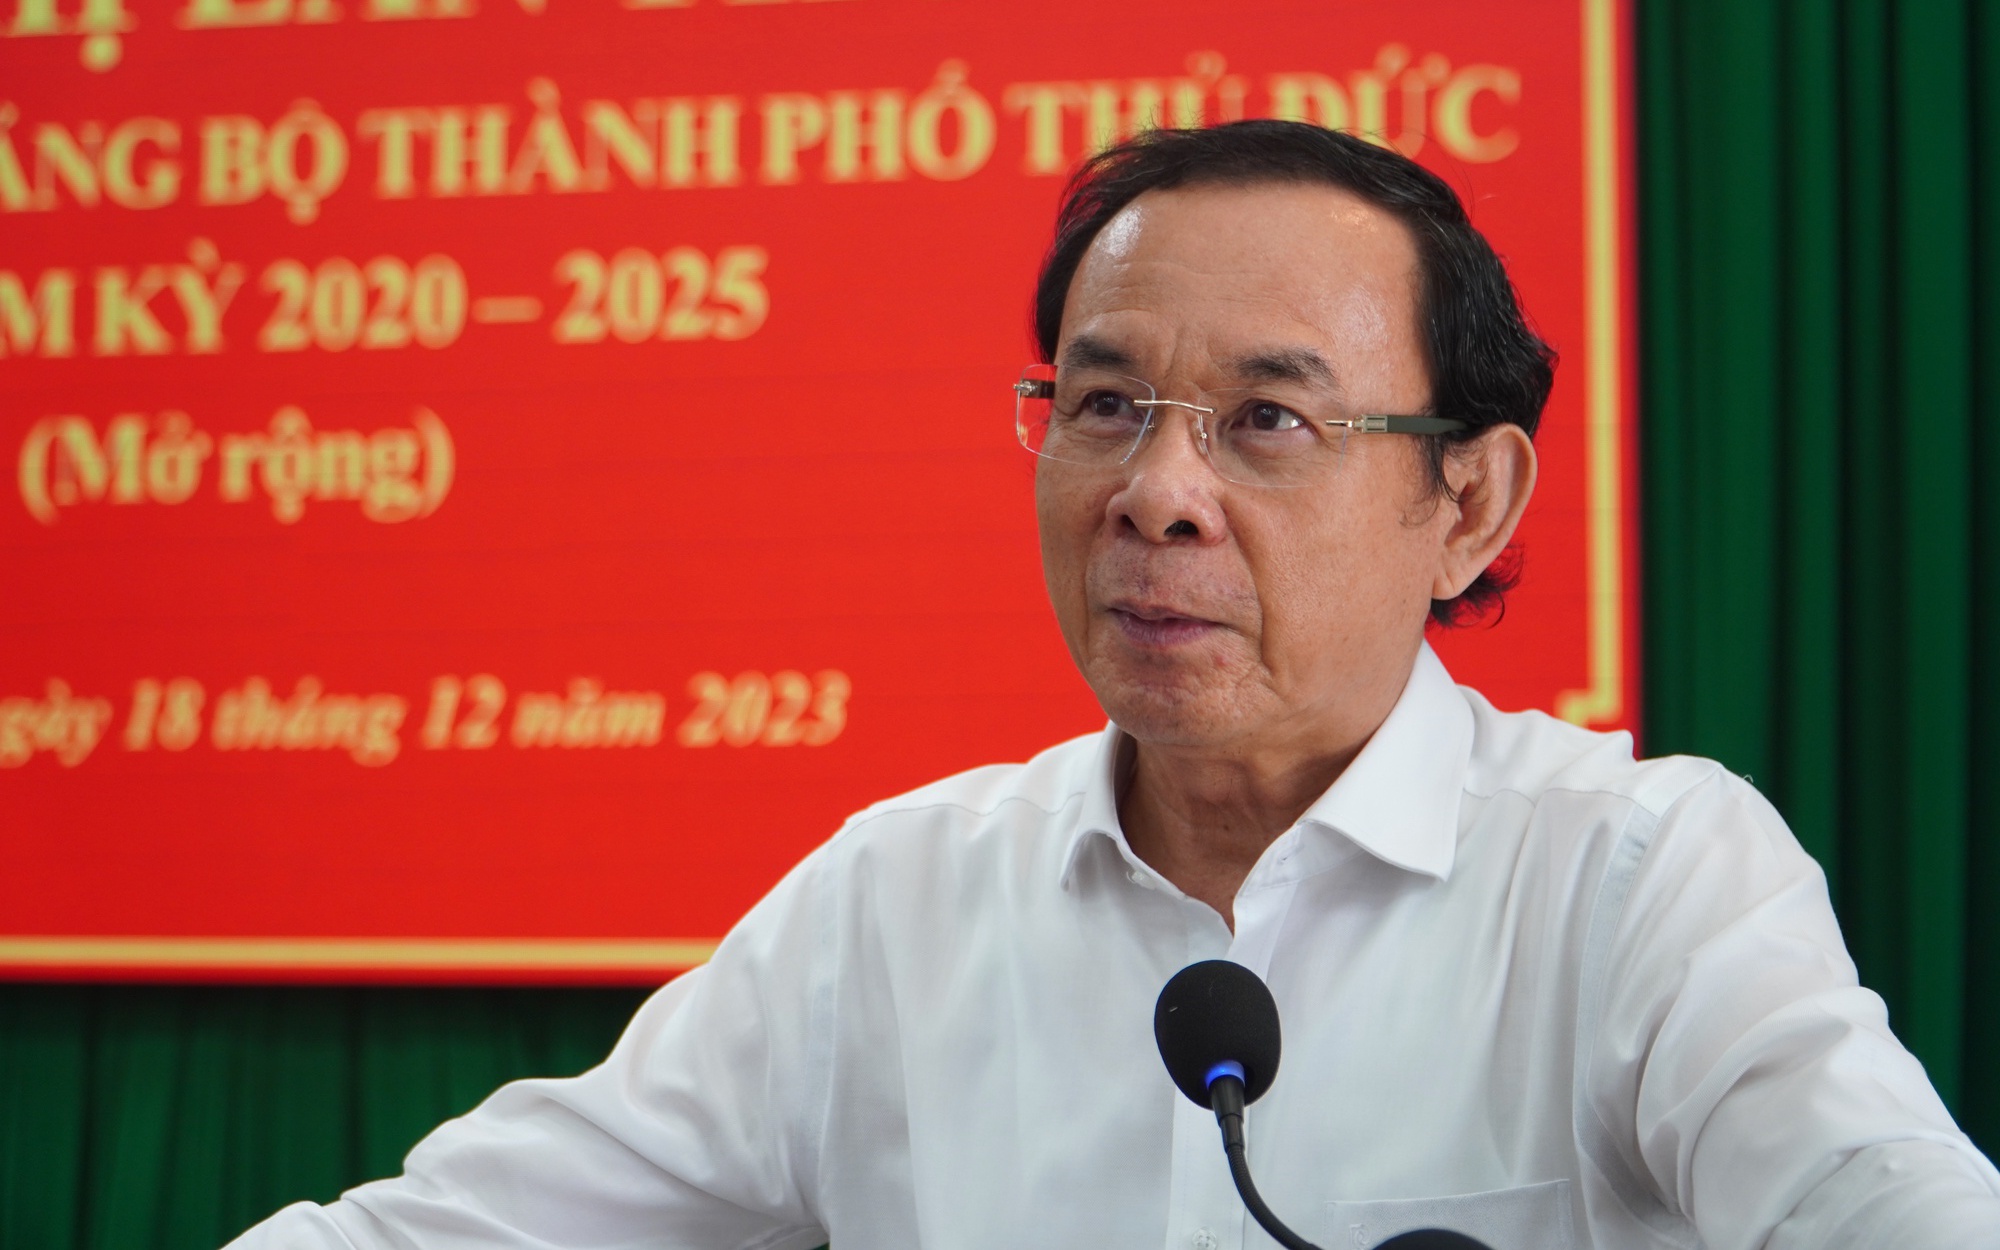 Bí thư Nguyễn Văn Nên nói về công tác cán bộ của TP Thủ Đức